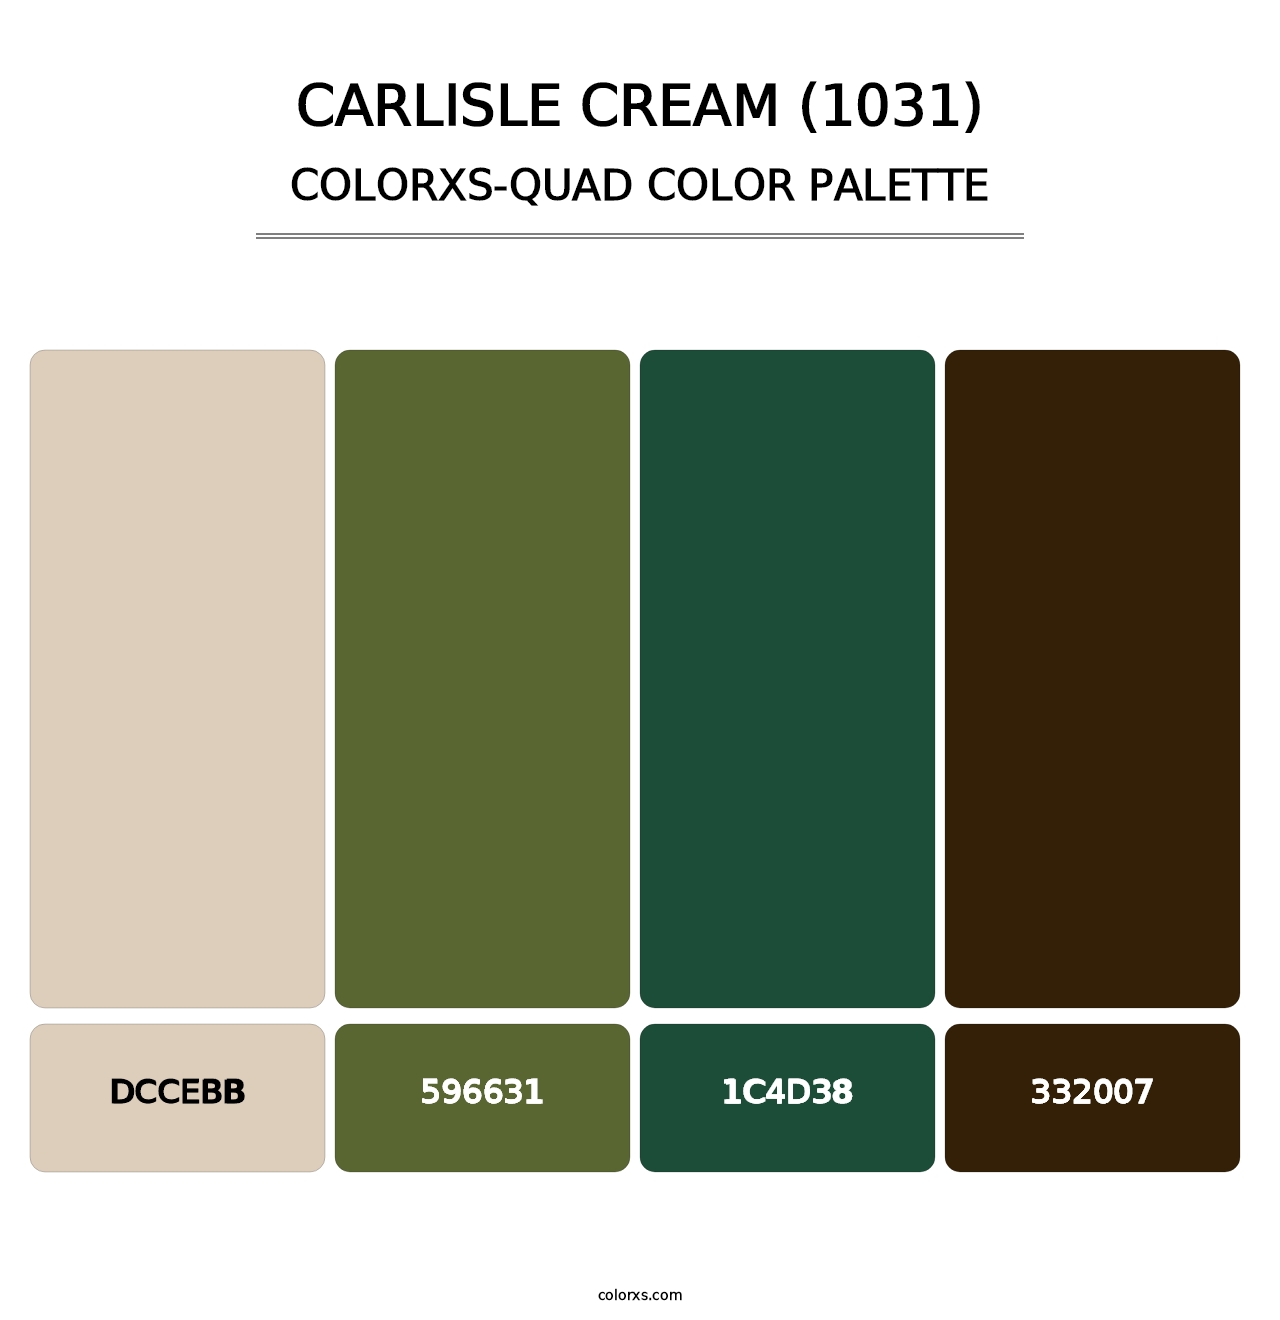 Carlisle Cream (1031) - Colorxs Quad Palette